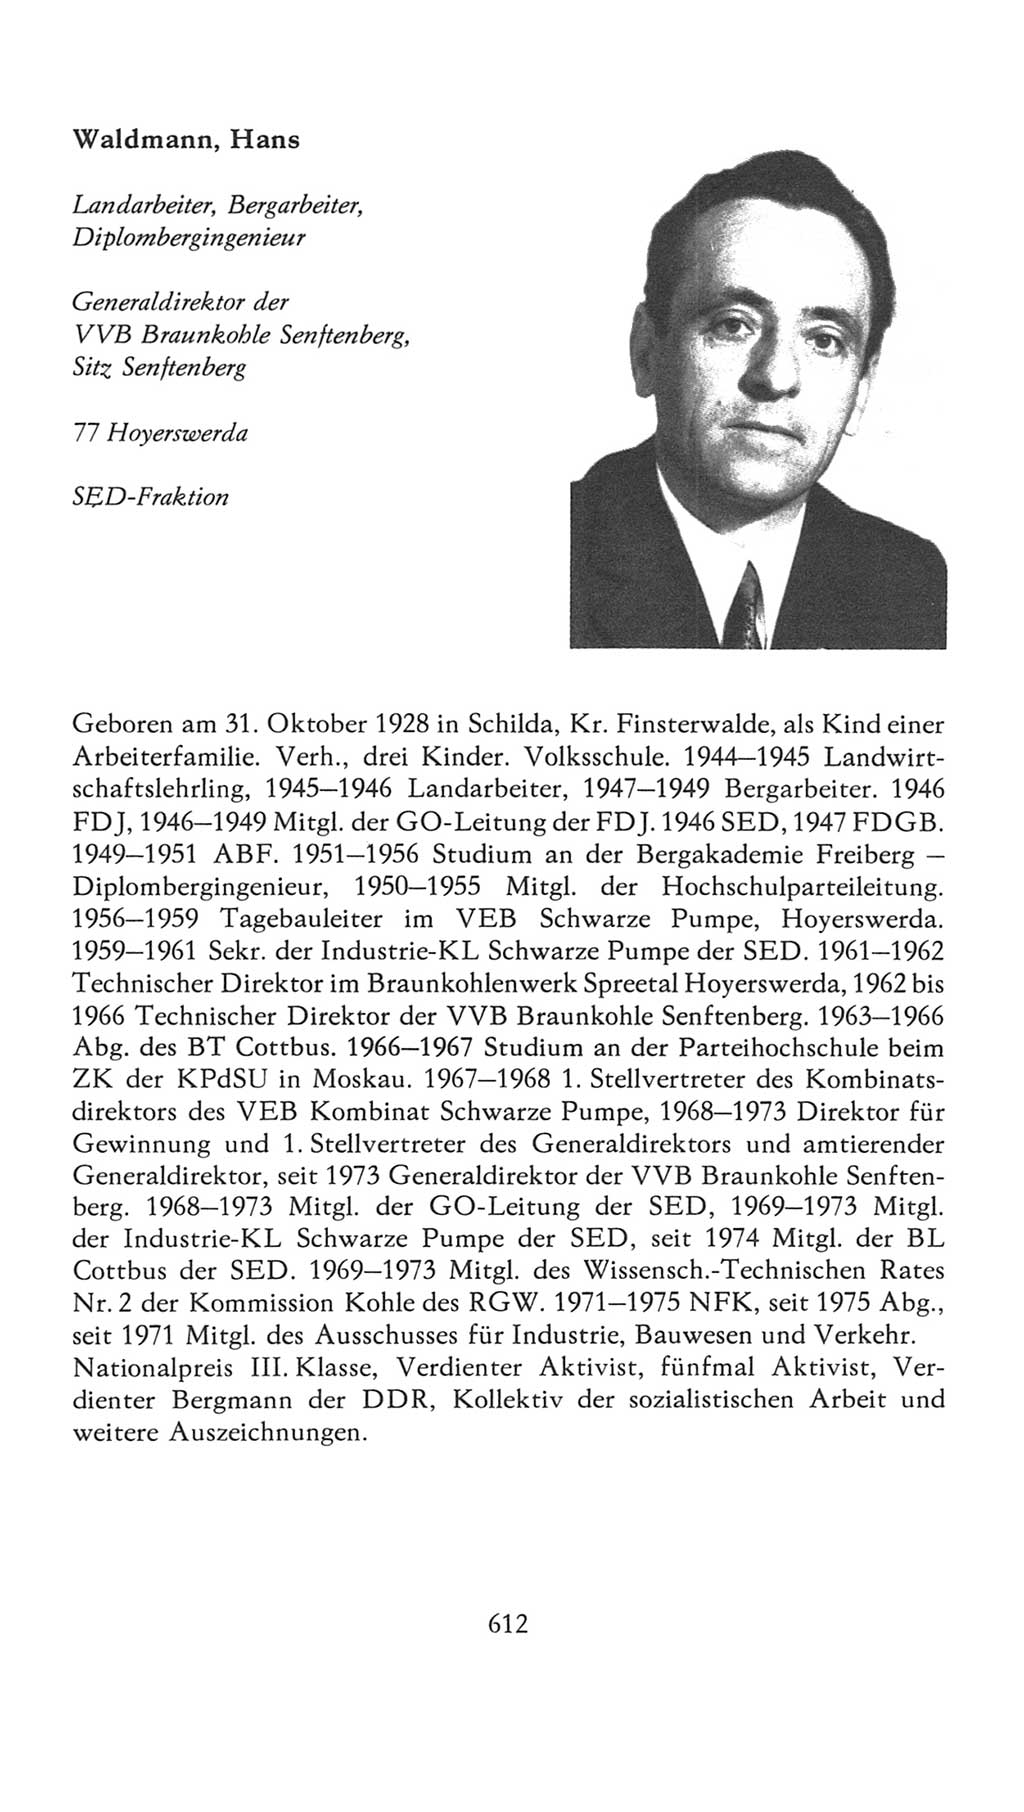 Volkskammer (VK) der Deutschen Demokratischen Republik (DDR), 7. Wahlperiode 1976-1981, Seite 612 (VK. DDR 7. WP. 1976-1981, S. 612)